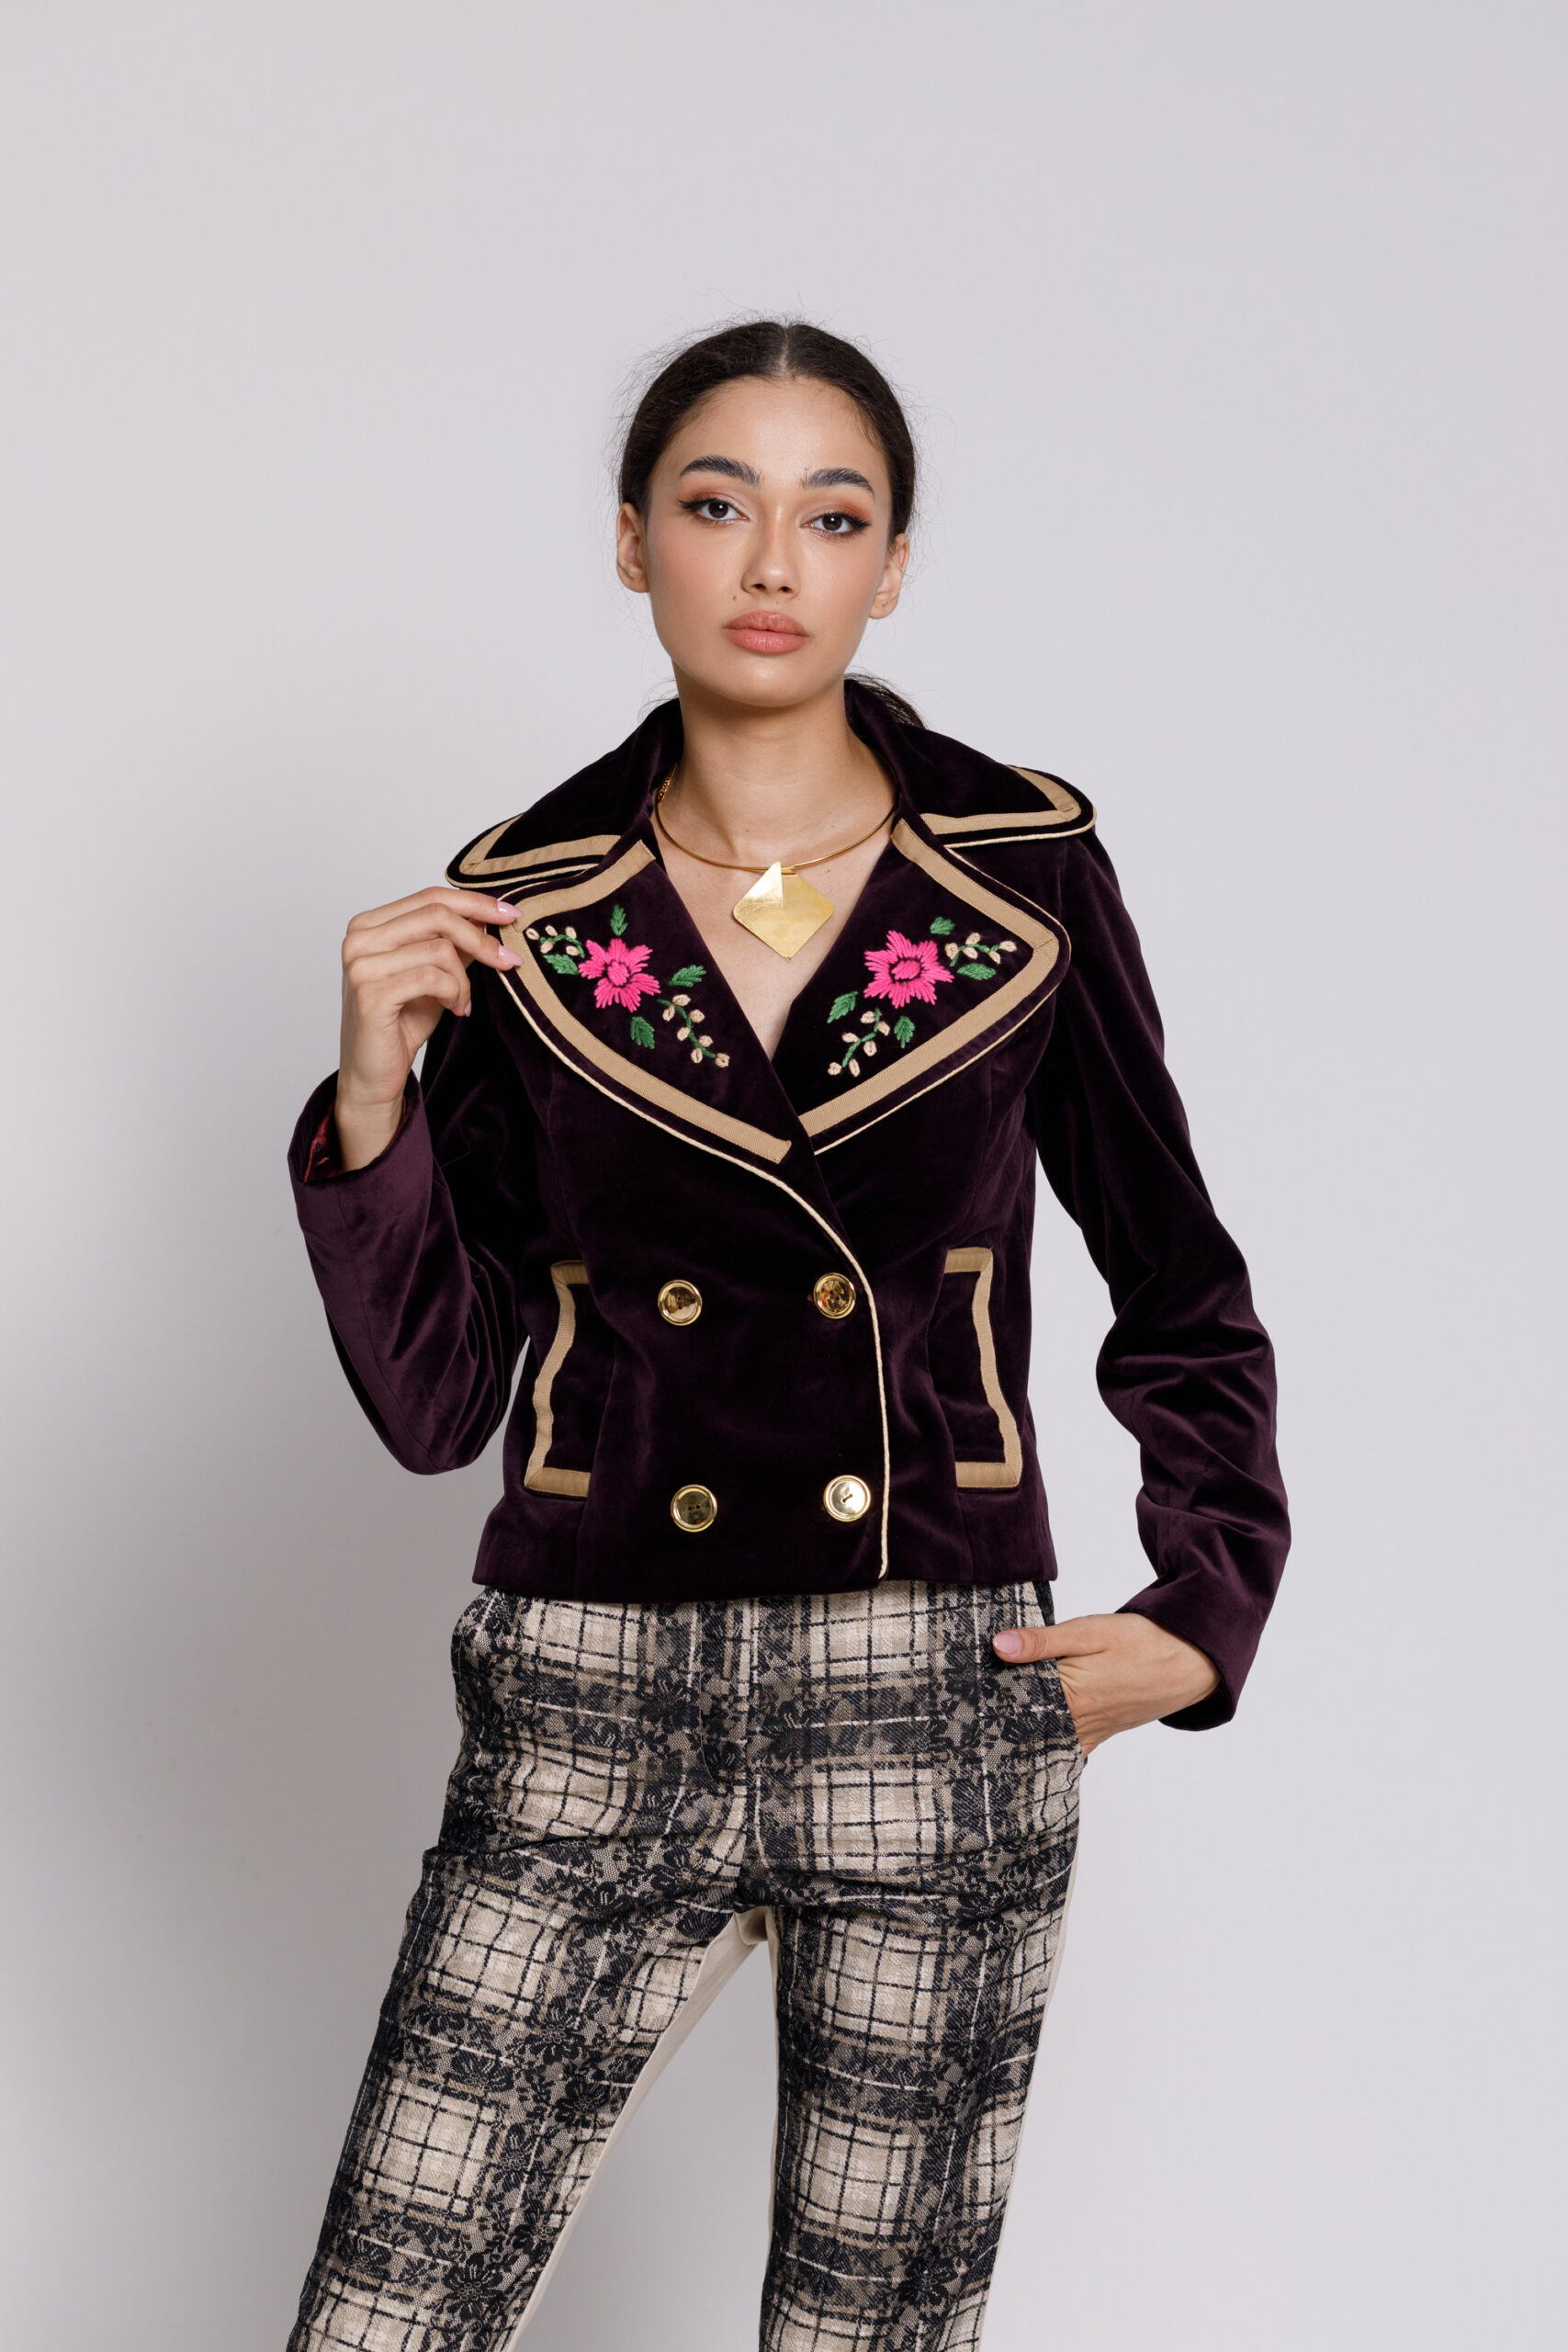 Jacheta DAVINA eleganta din catifea violet cu broderie. Materiale naturale, design unicat, cu broderie si aplicatii handmade